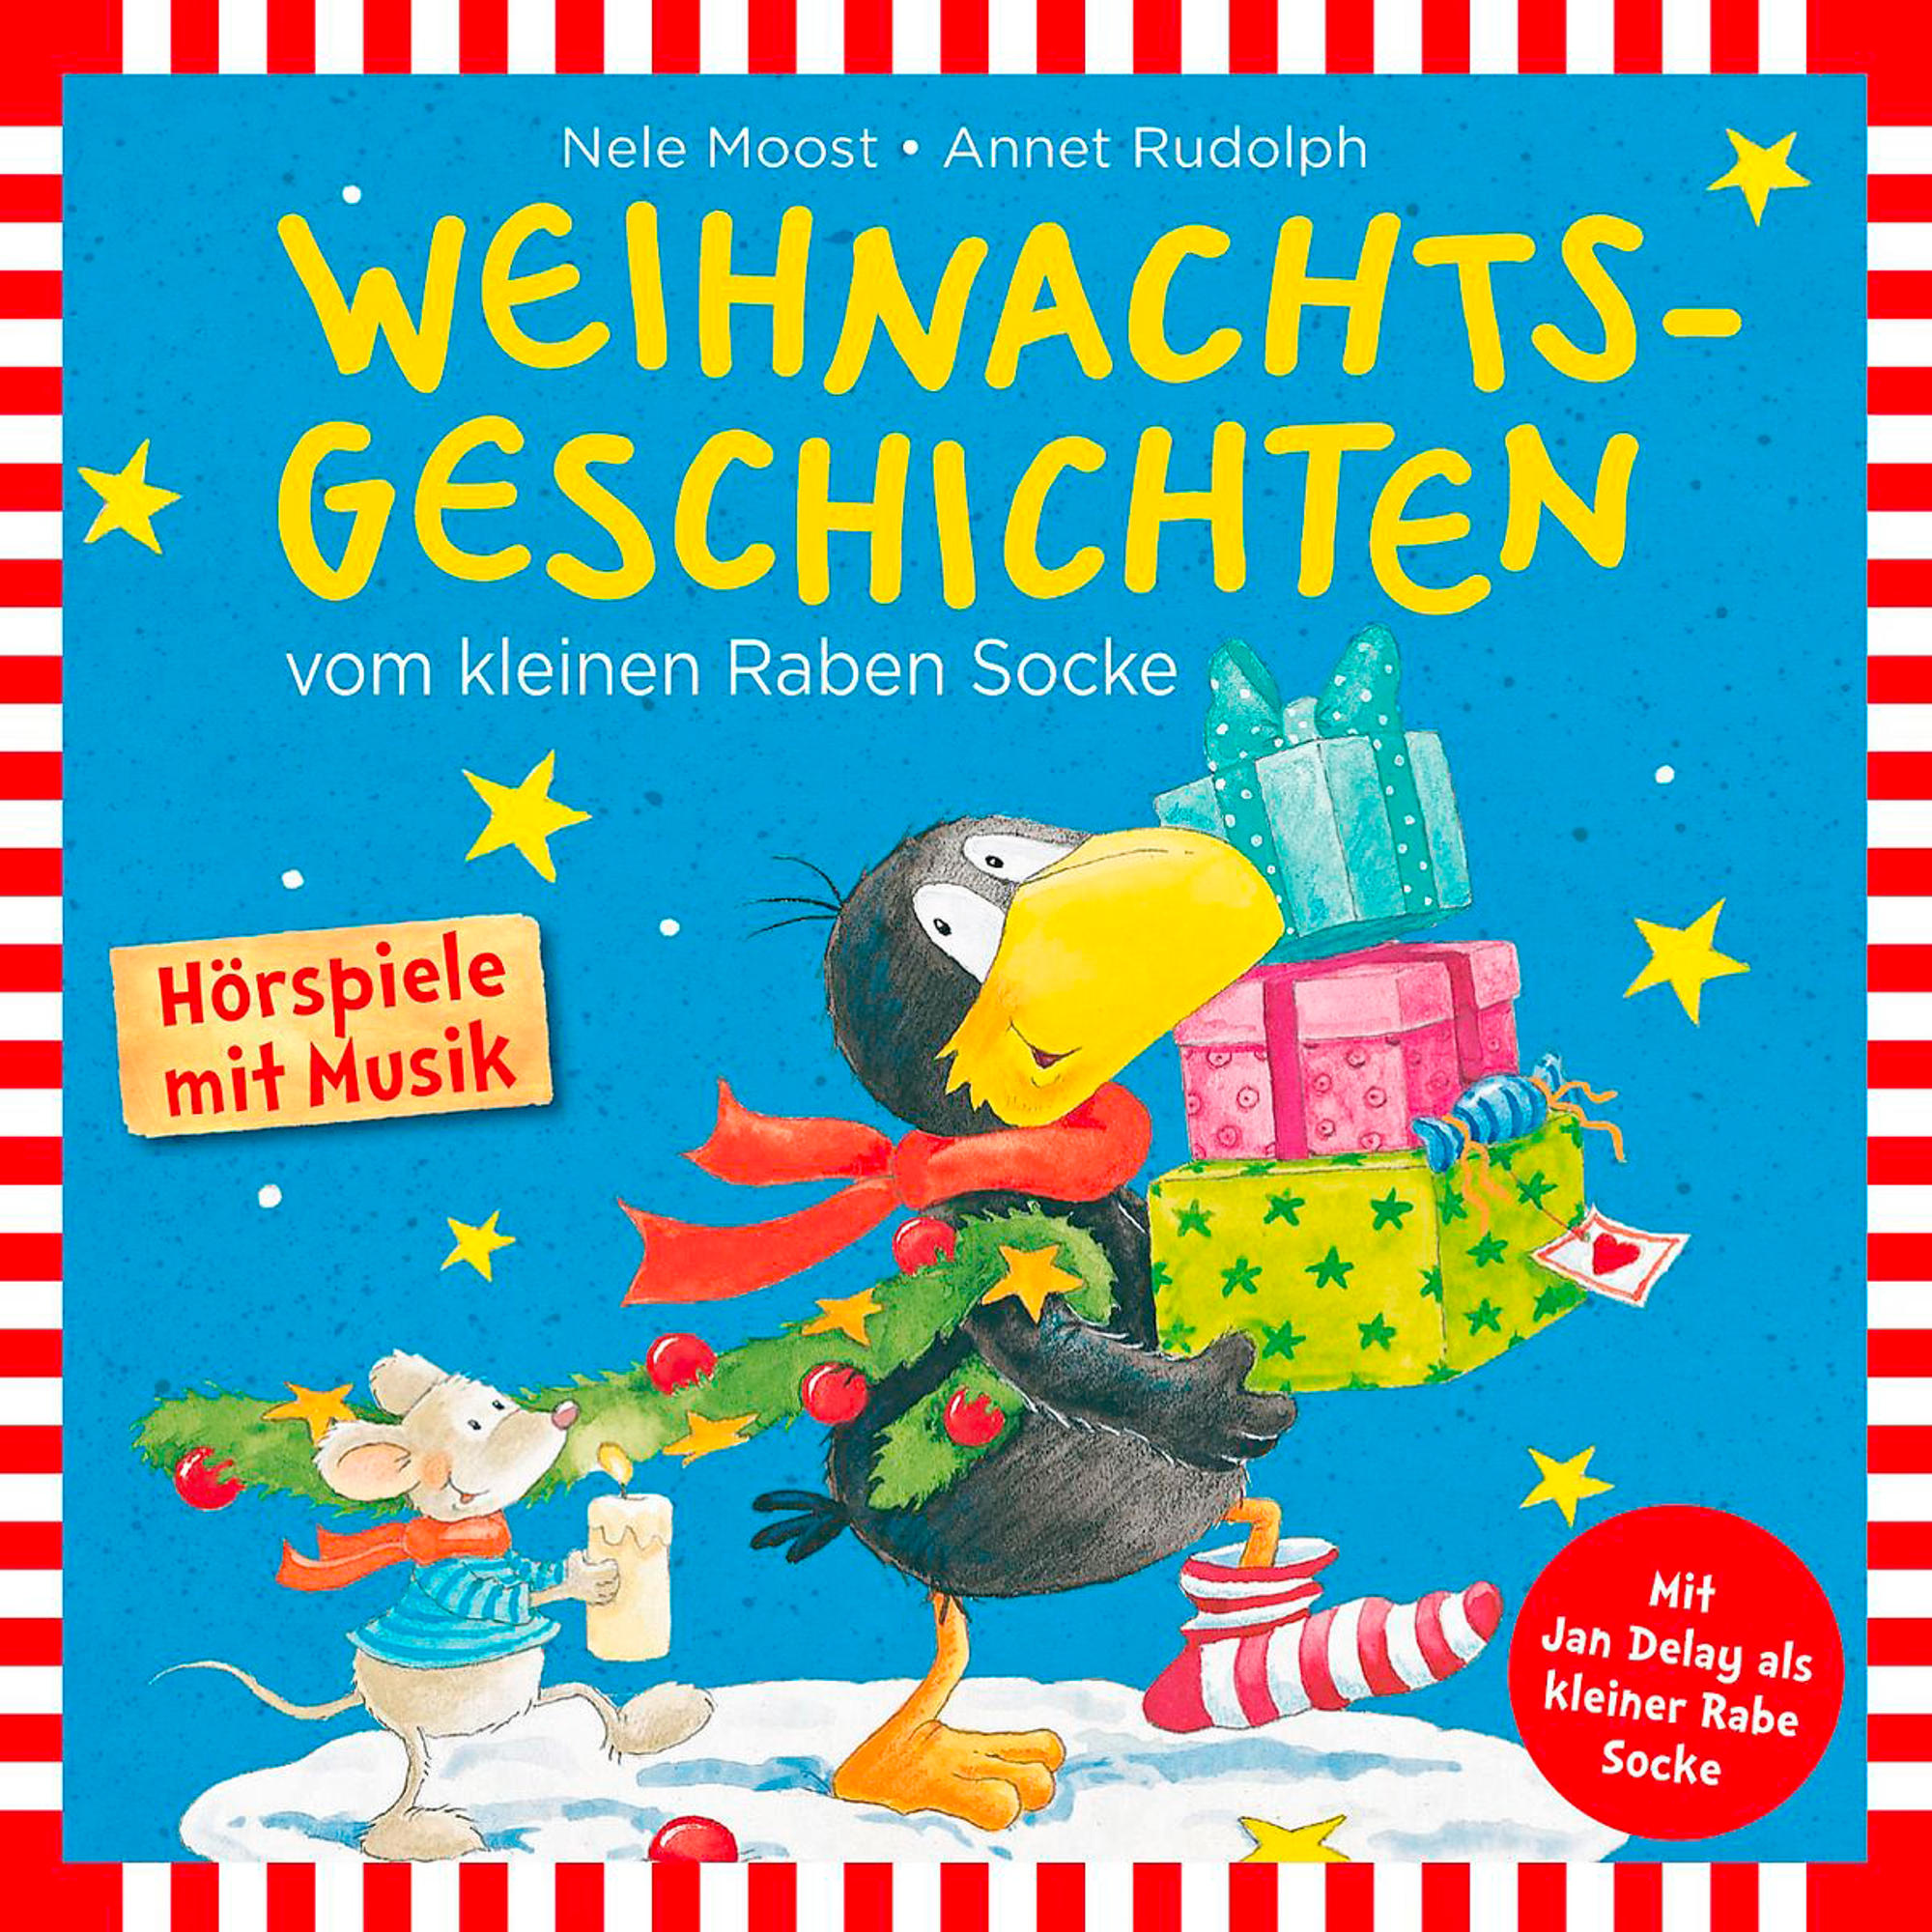 Rabe Socke - Raben Kleinen - Vom Socke Weihnachtsgeschichten (CD)